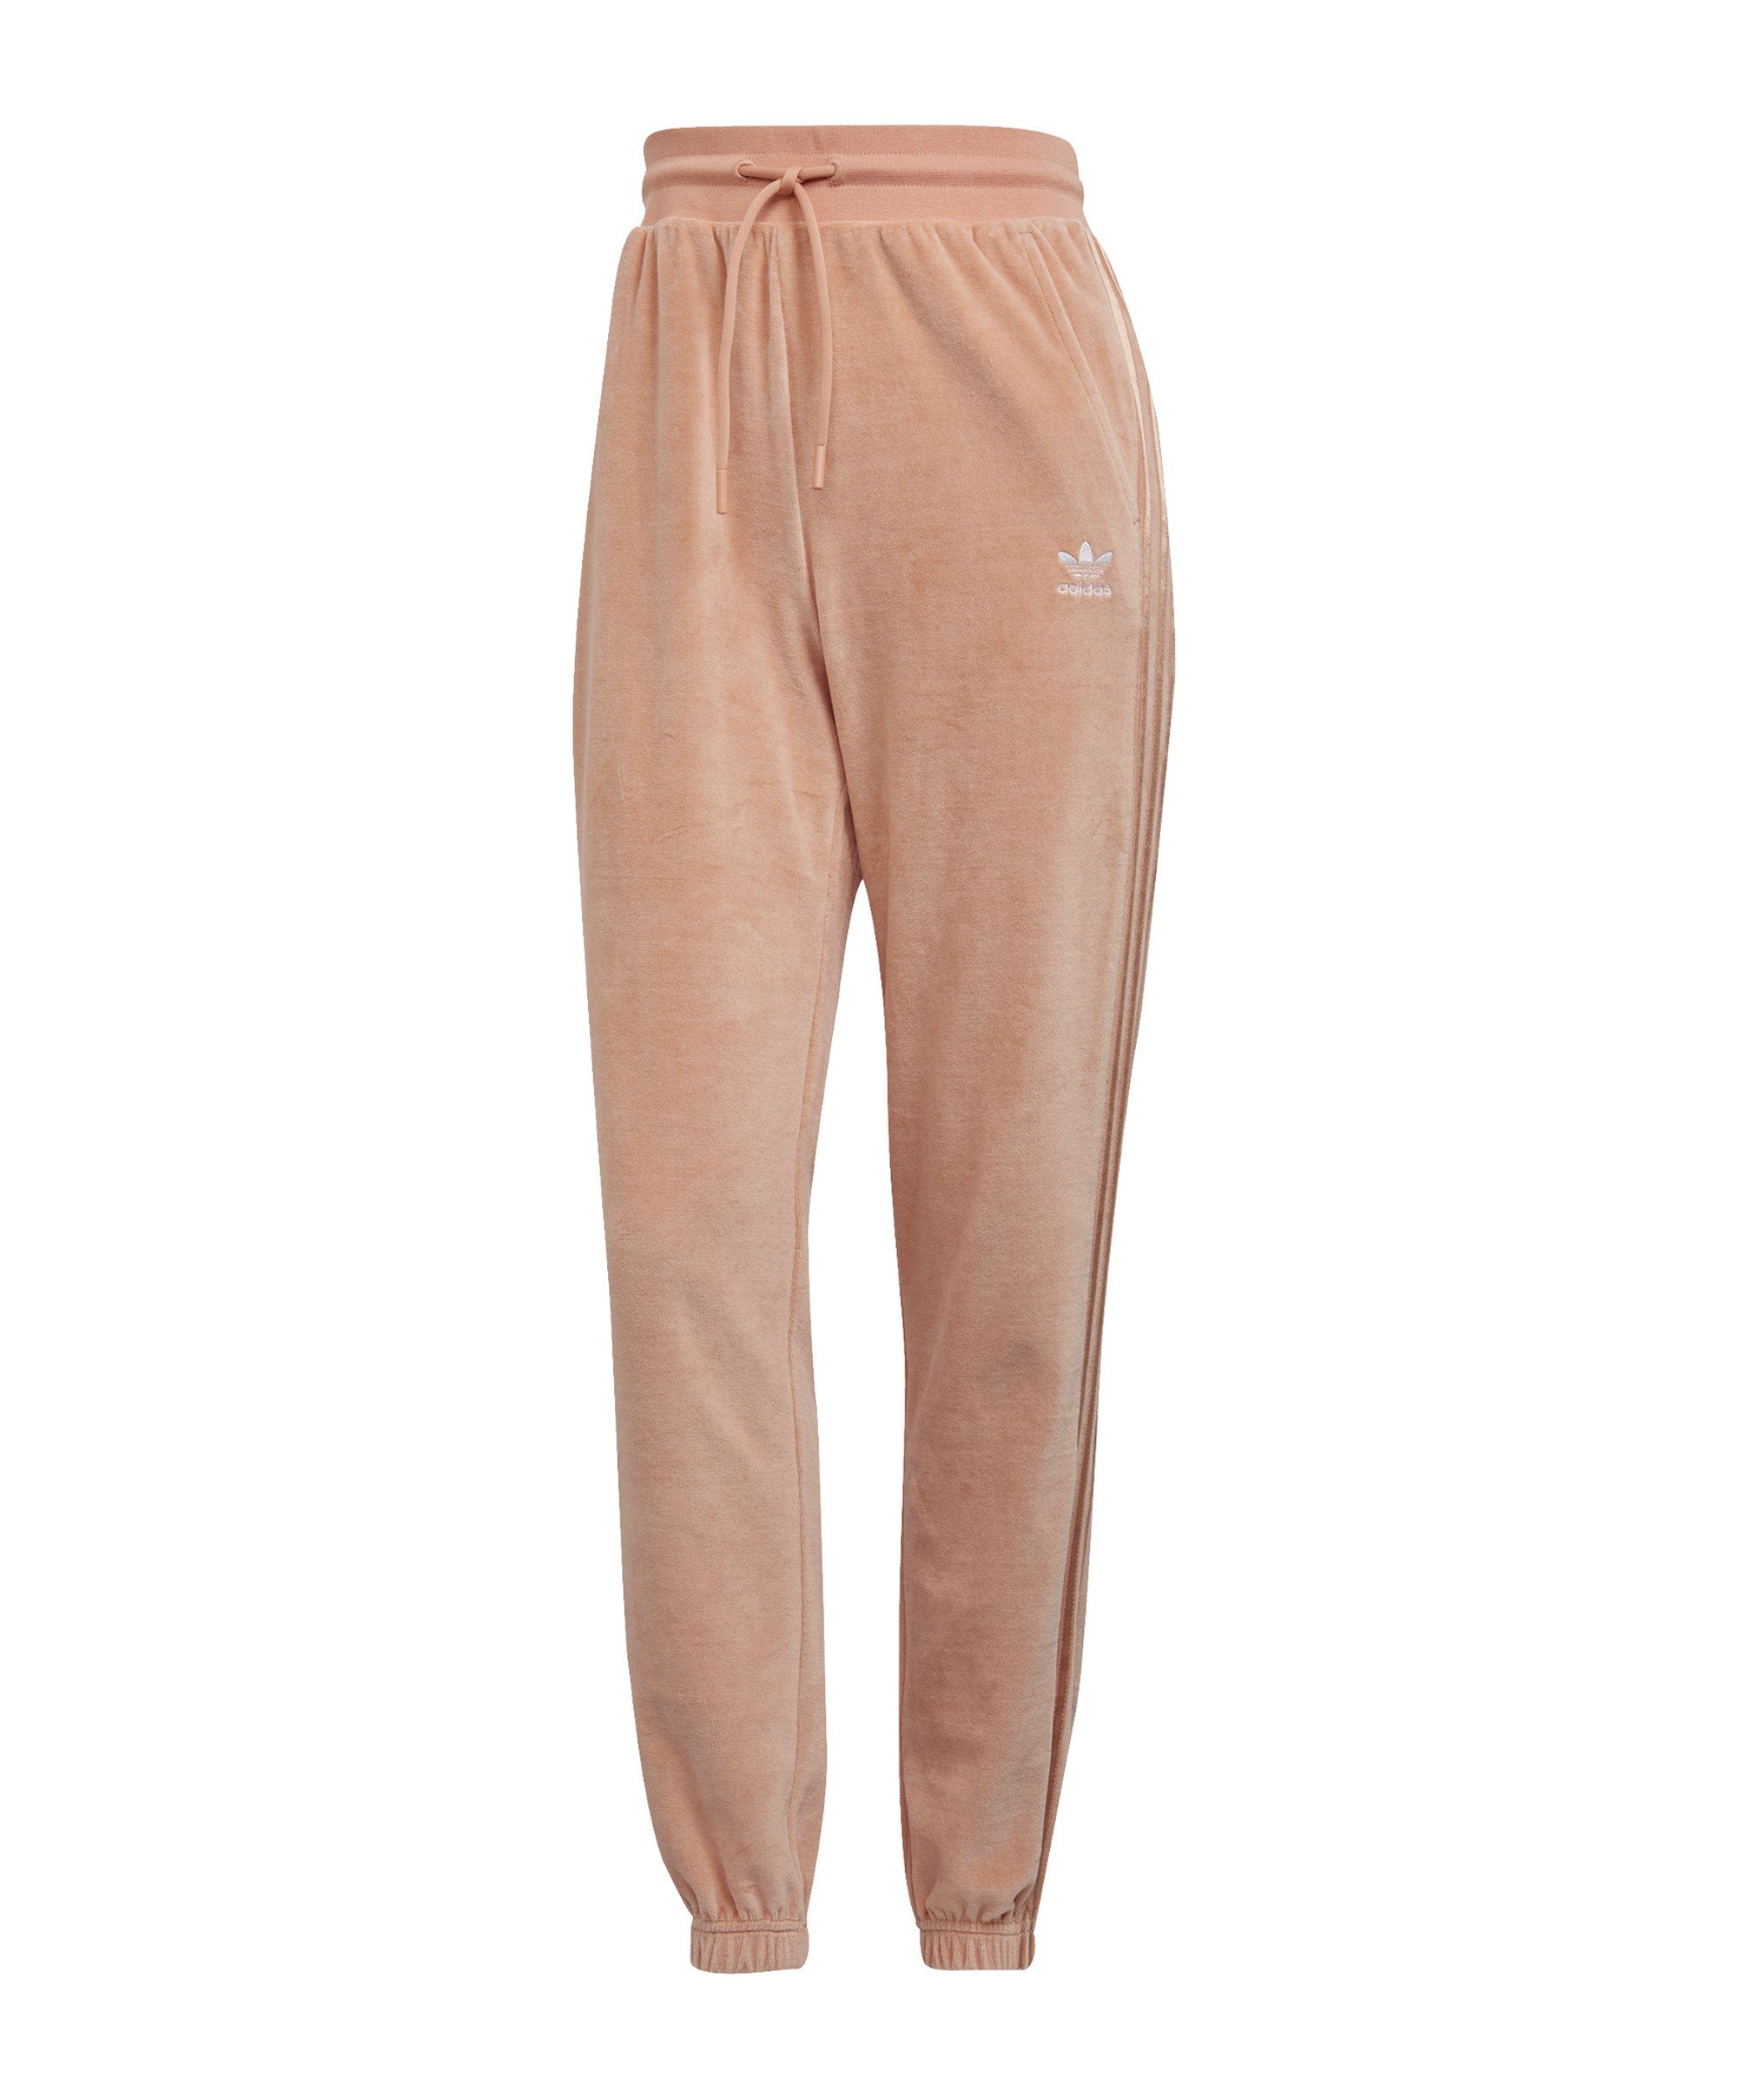 Rosa adidas Hosen für Damen kaufen » Pinke adidas Hosen | OTTO